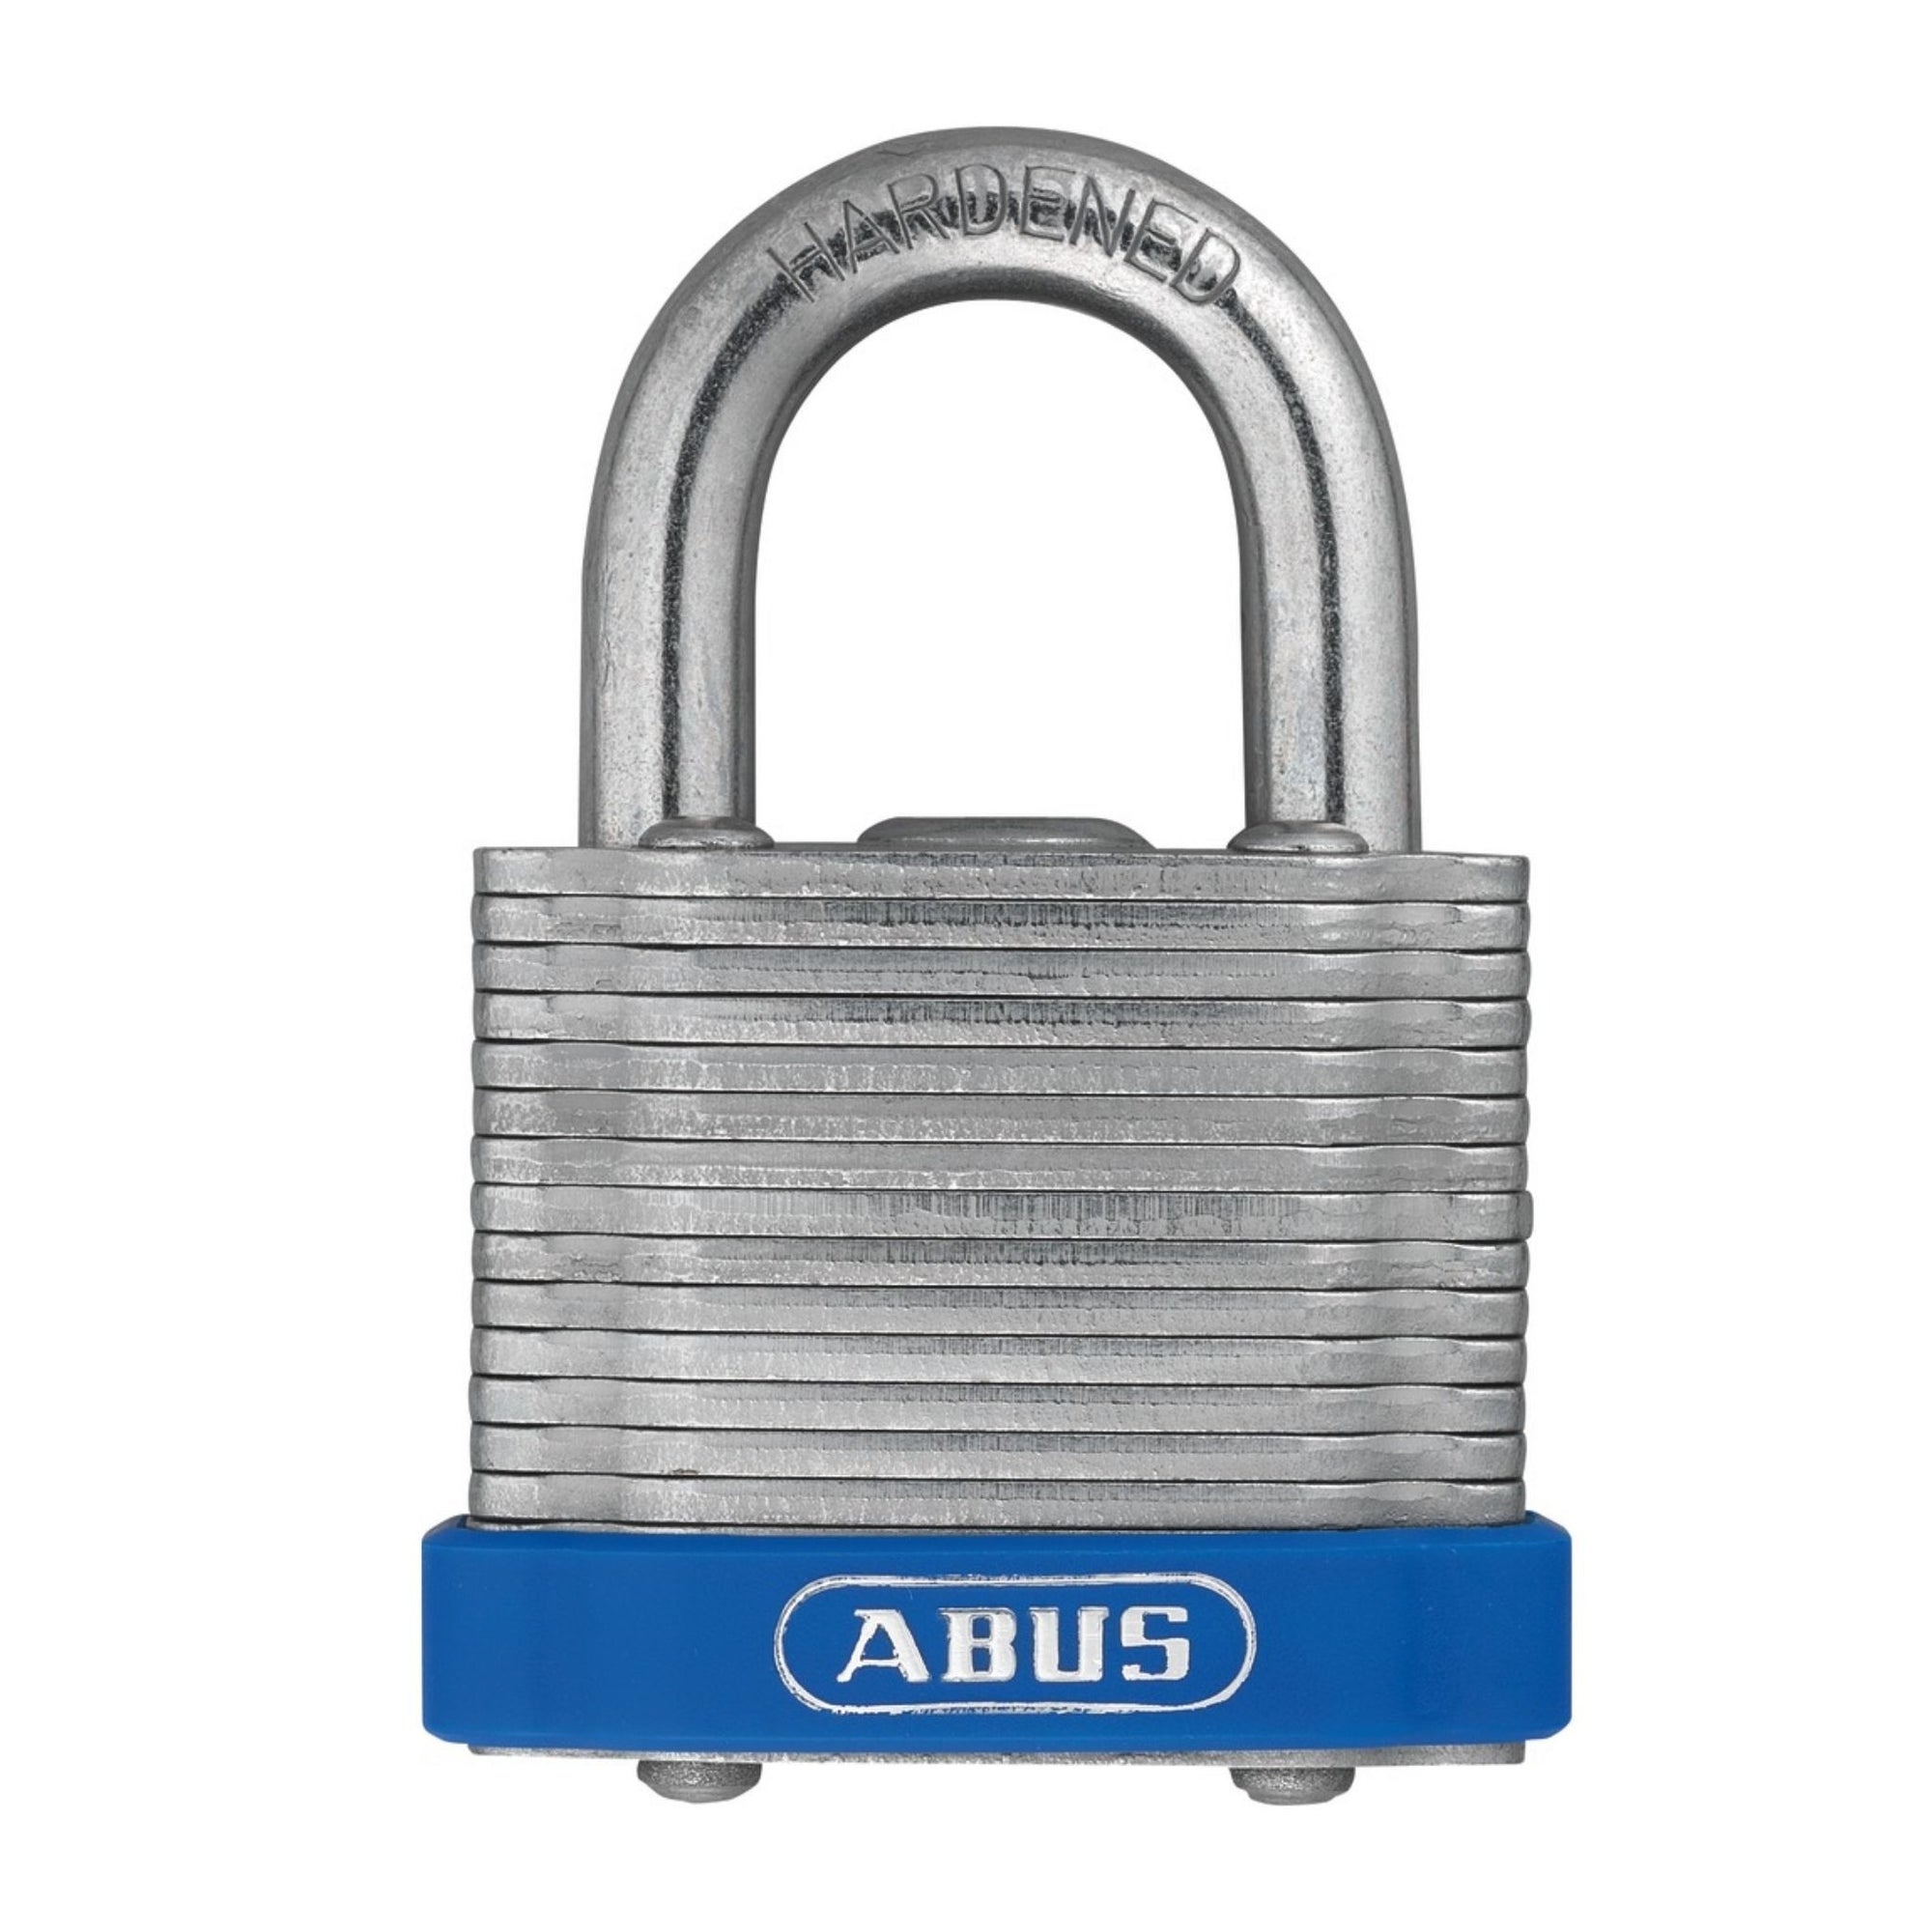 Abus 41/30 Laminated Steel Series Locks Keyed Alike (4130 KA), KD or MK Locks - The Lock Source